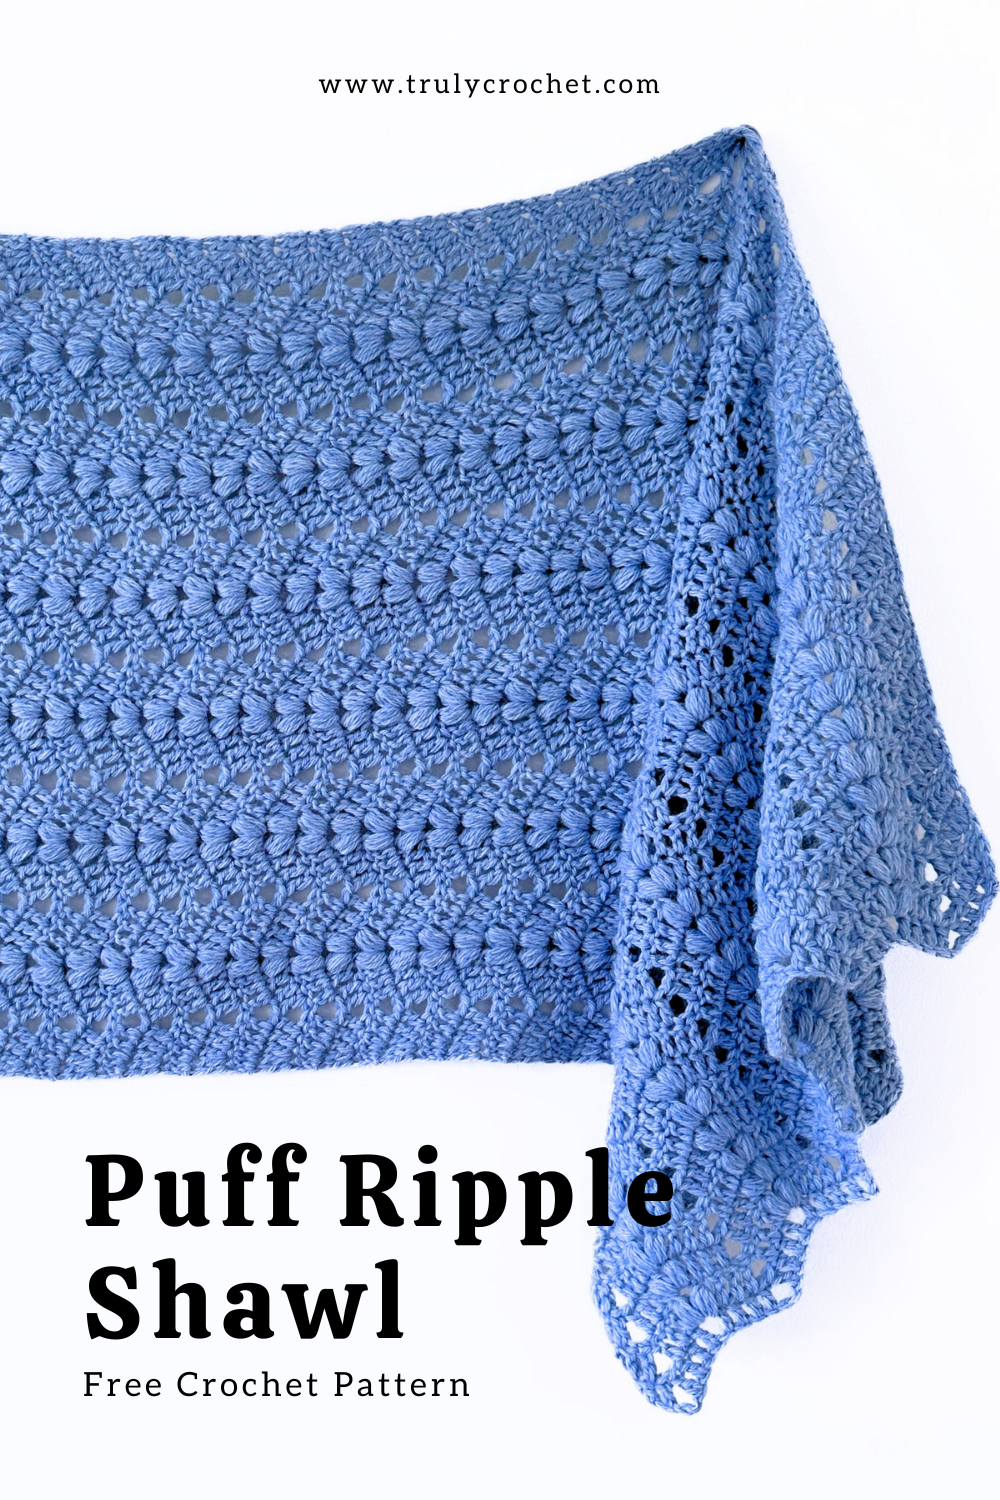 puff ripple shawl - free crochet pattern